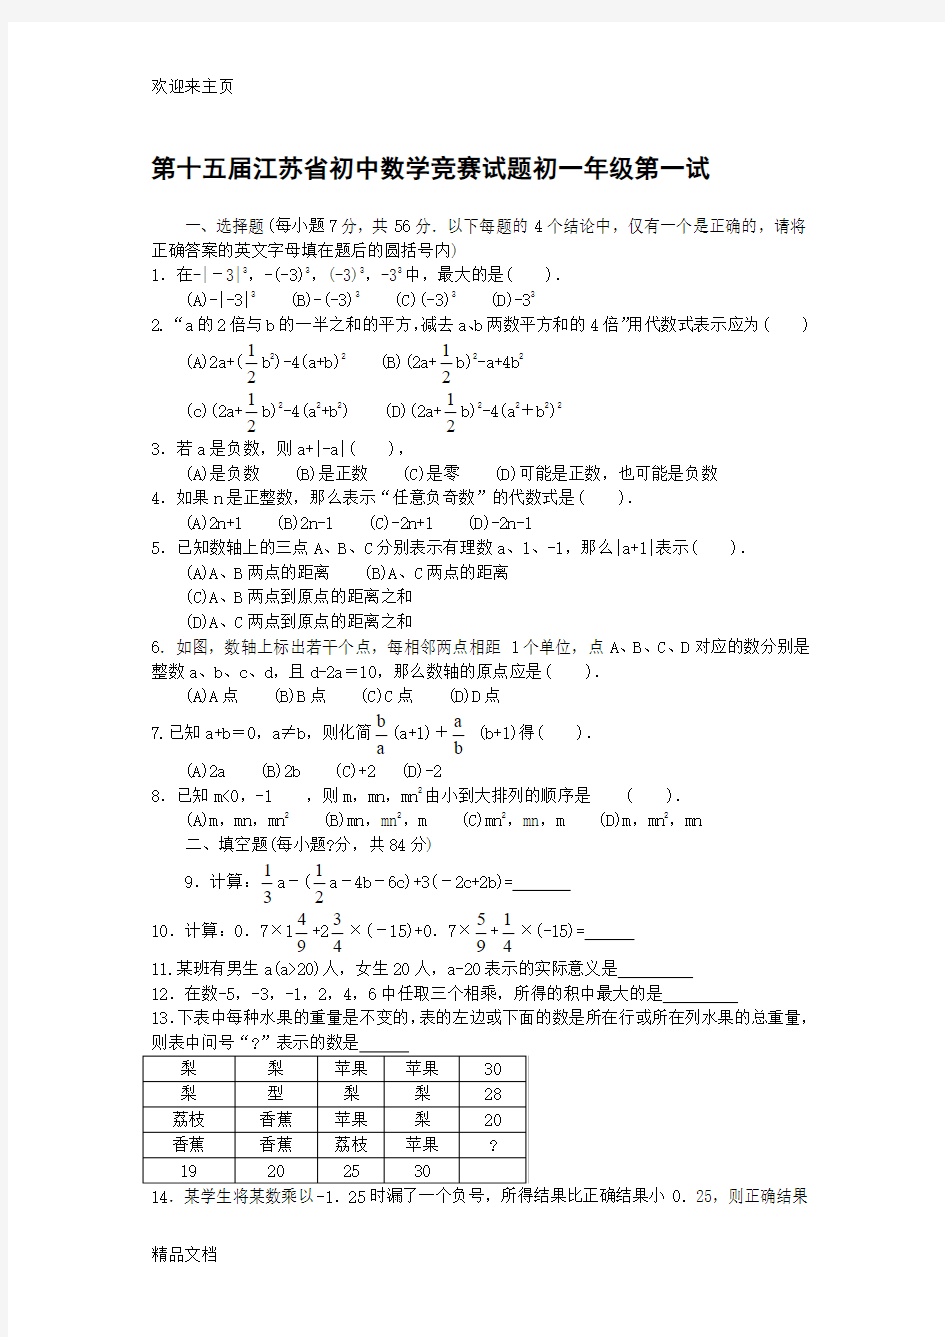 (2020年编辑)江苏省历年初中数学竞赛试题及解答(23份)